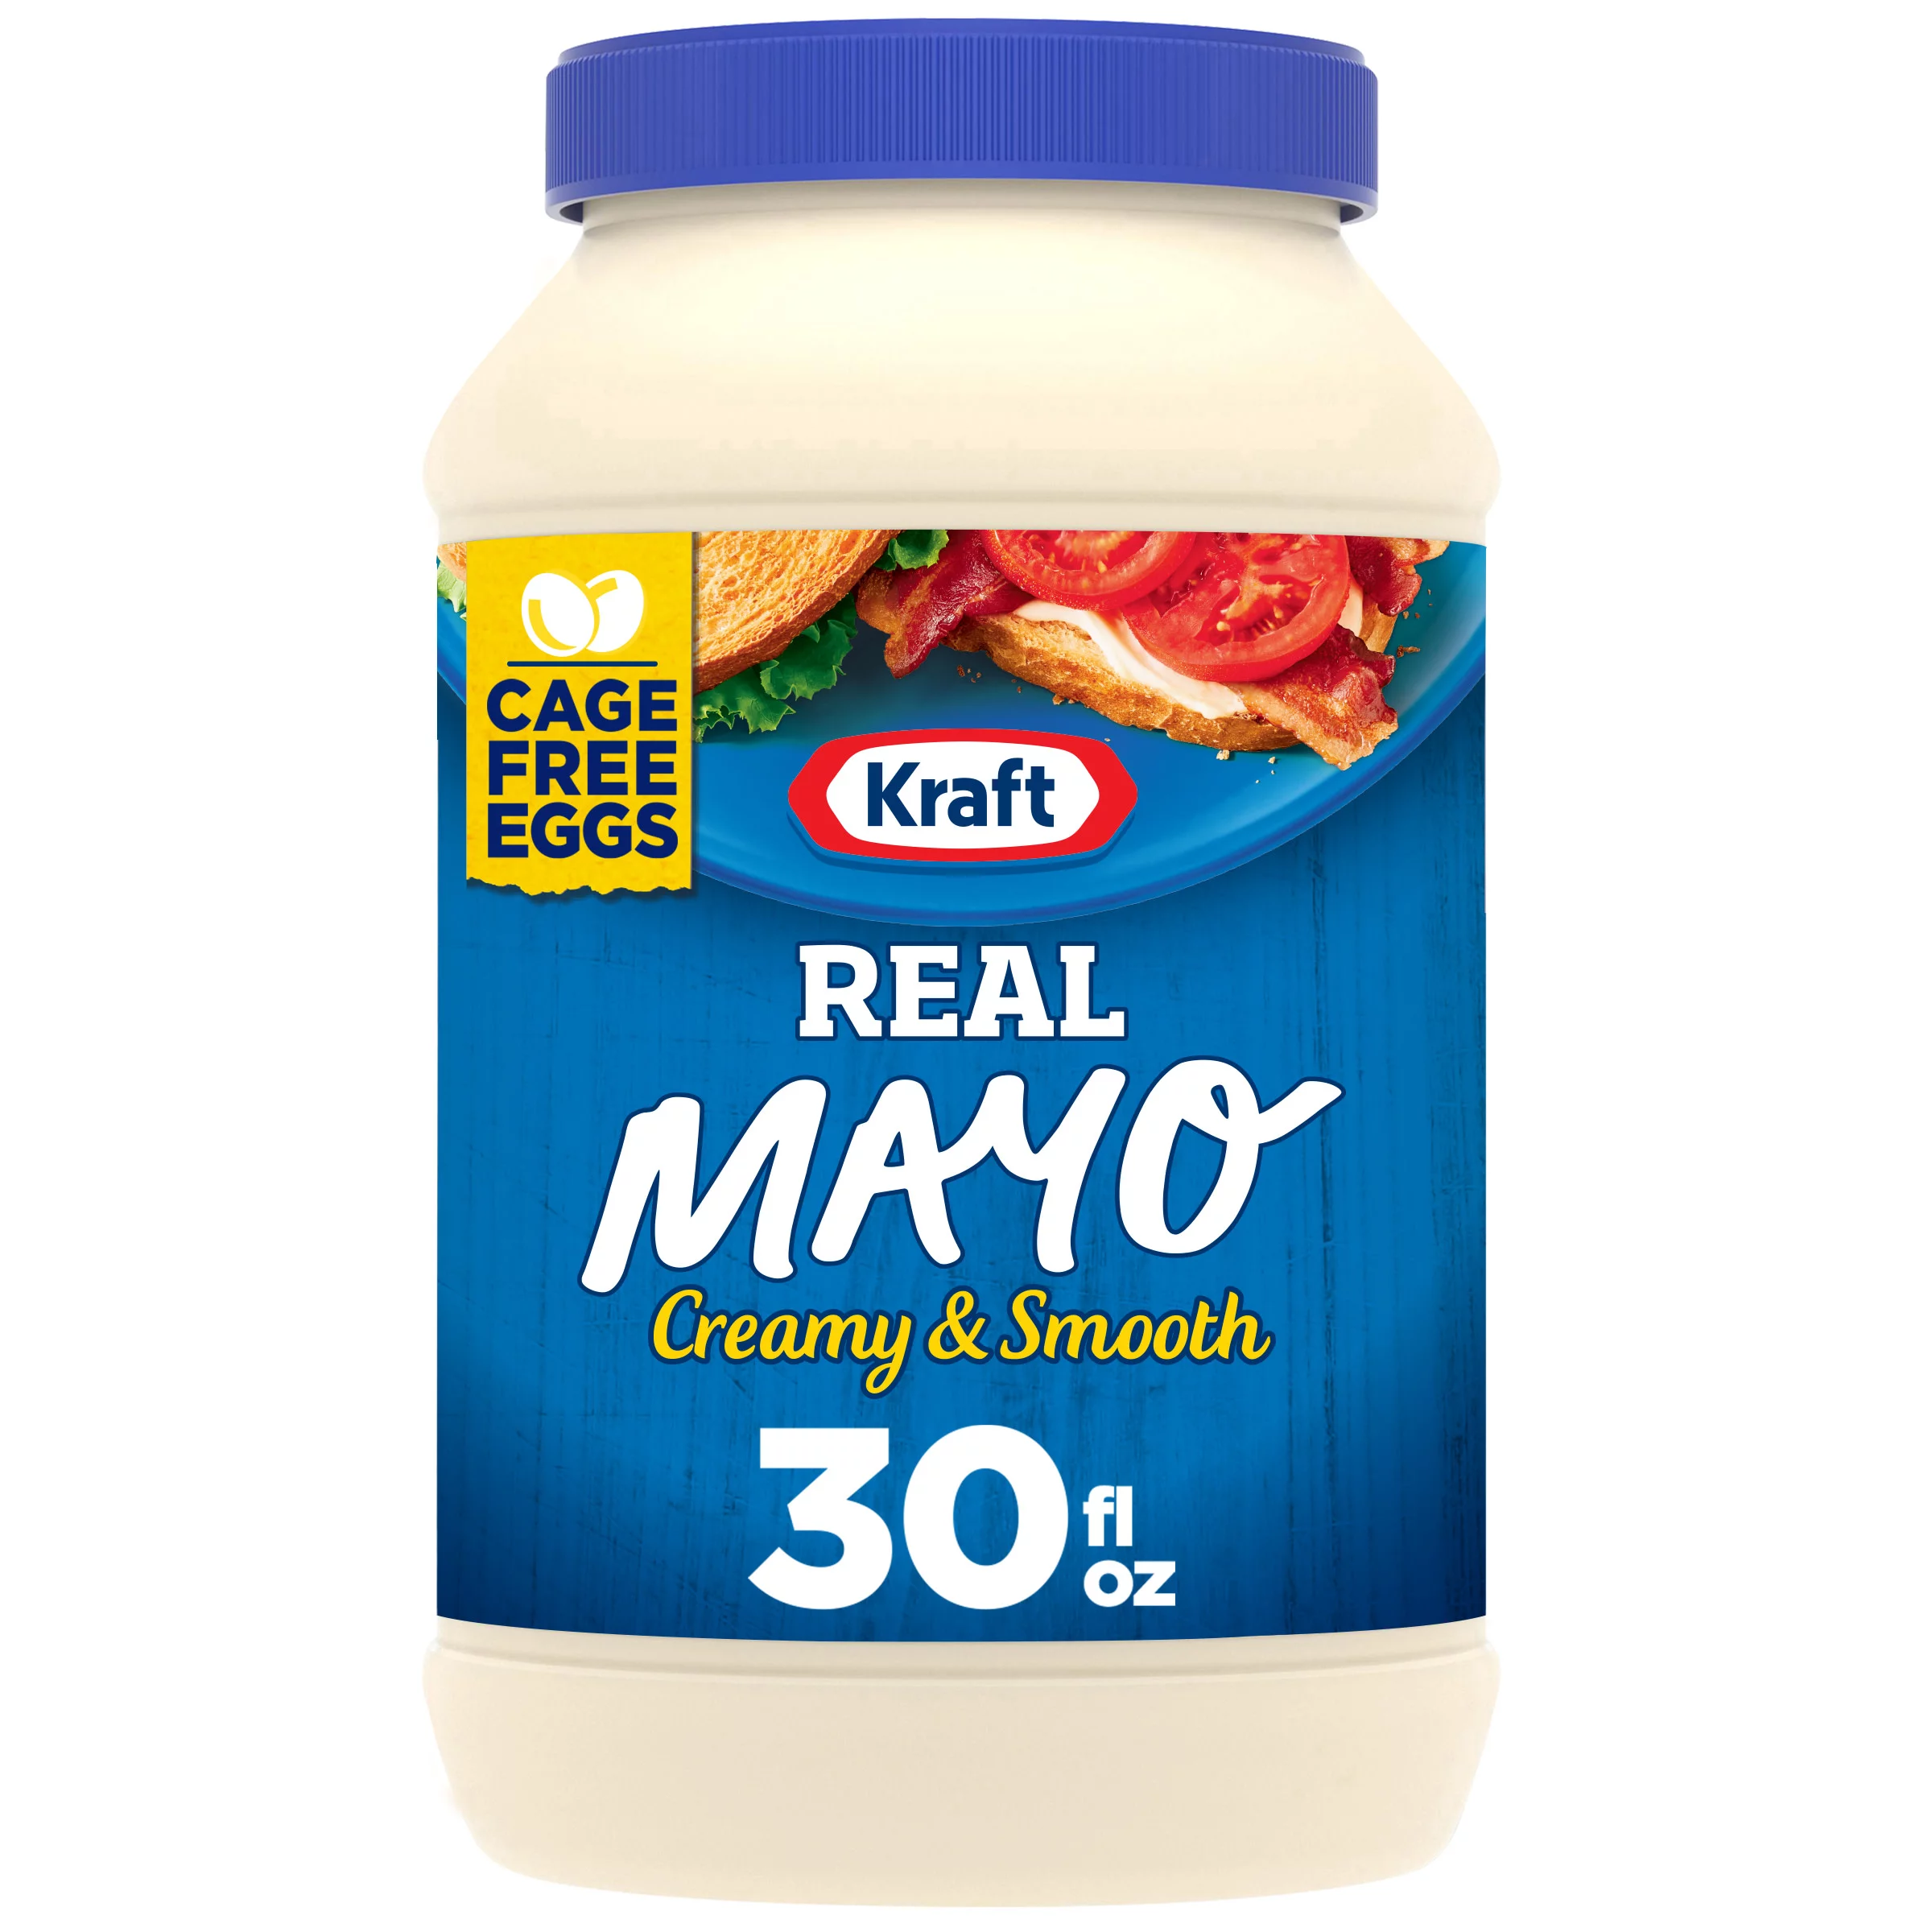 Kraft Real Mayo Creamy & Smooth Mayonnaise, 30 fl oz Jar - Walmart.com